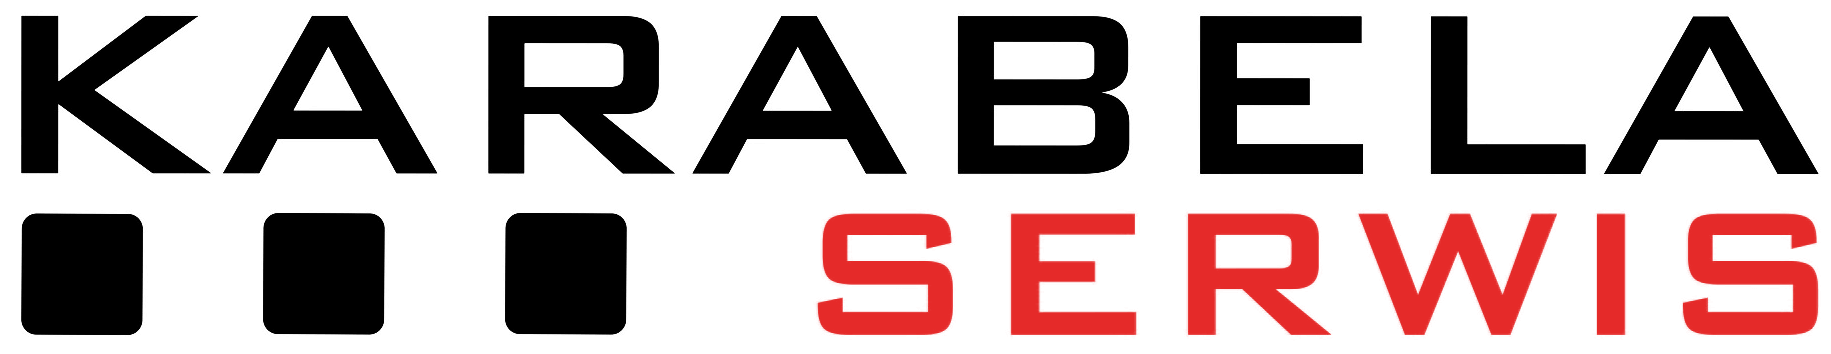 logo spółki karabela-serwis